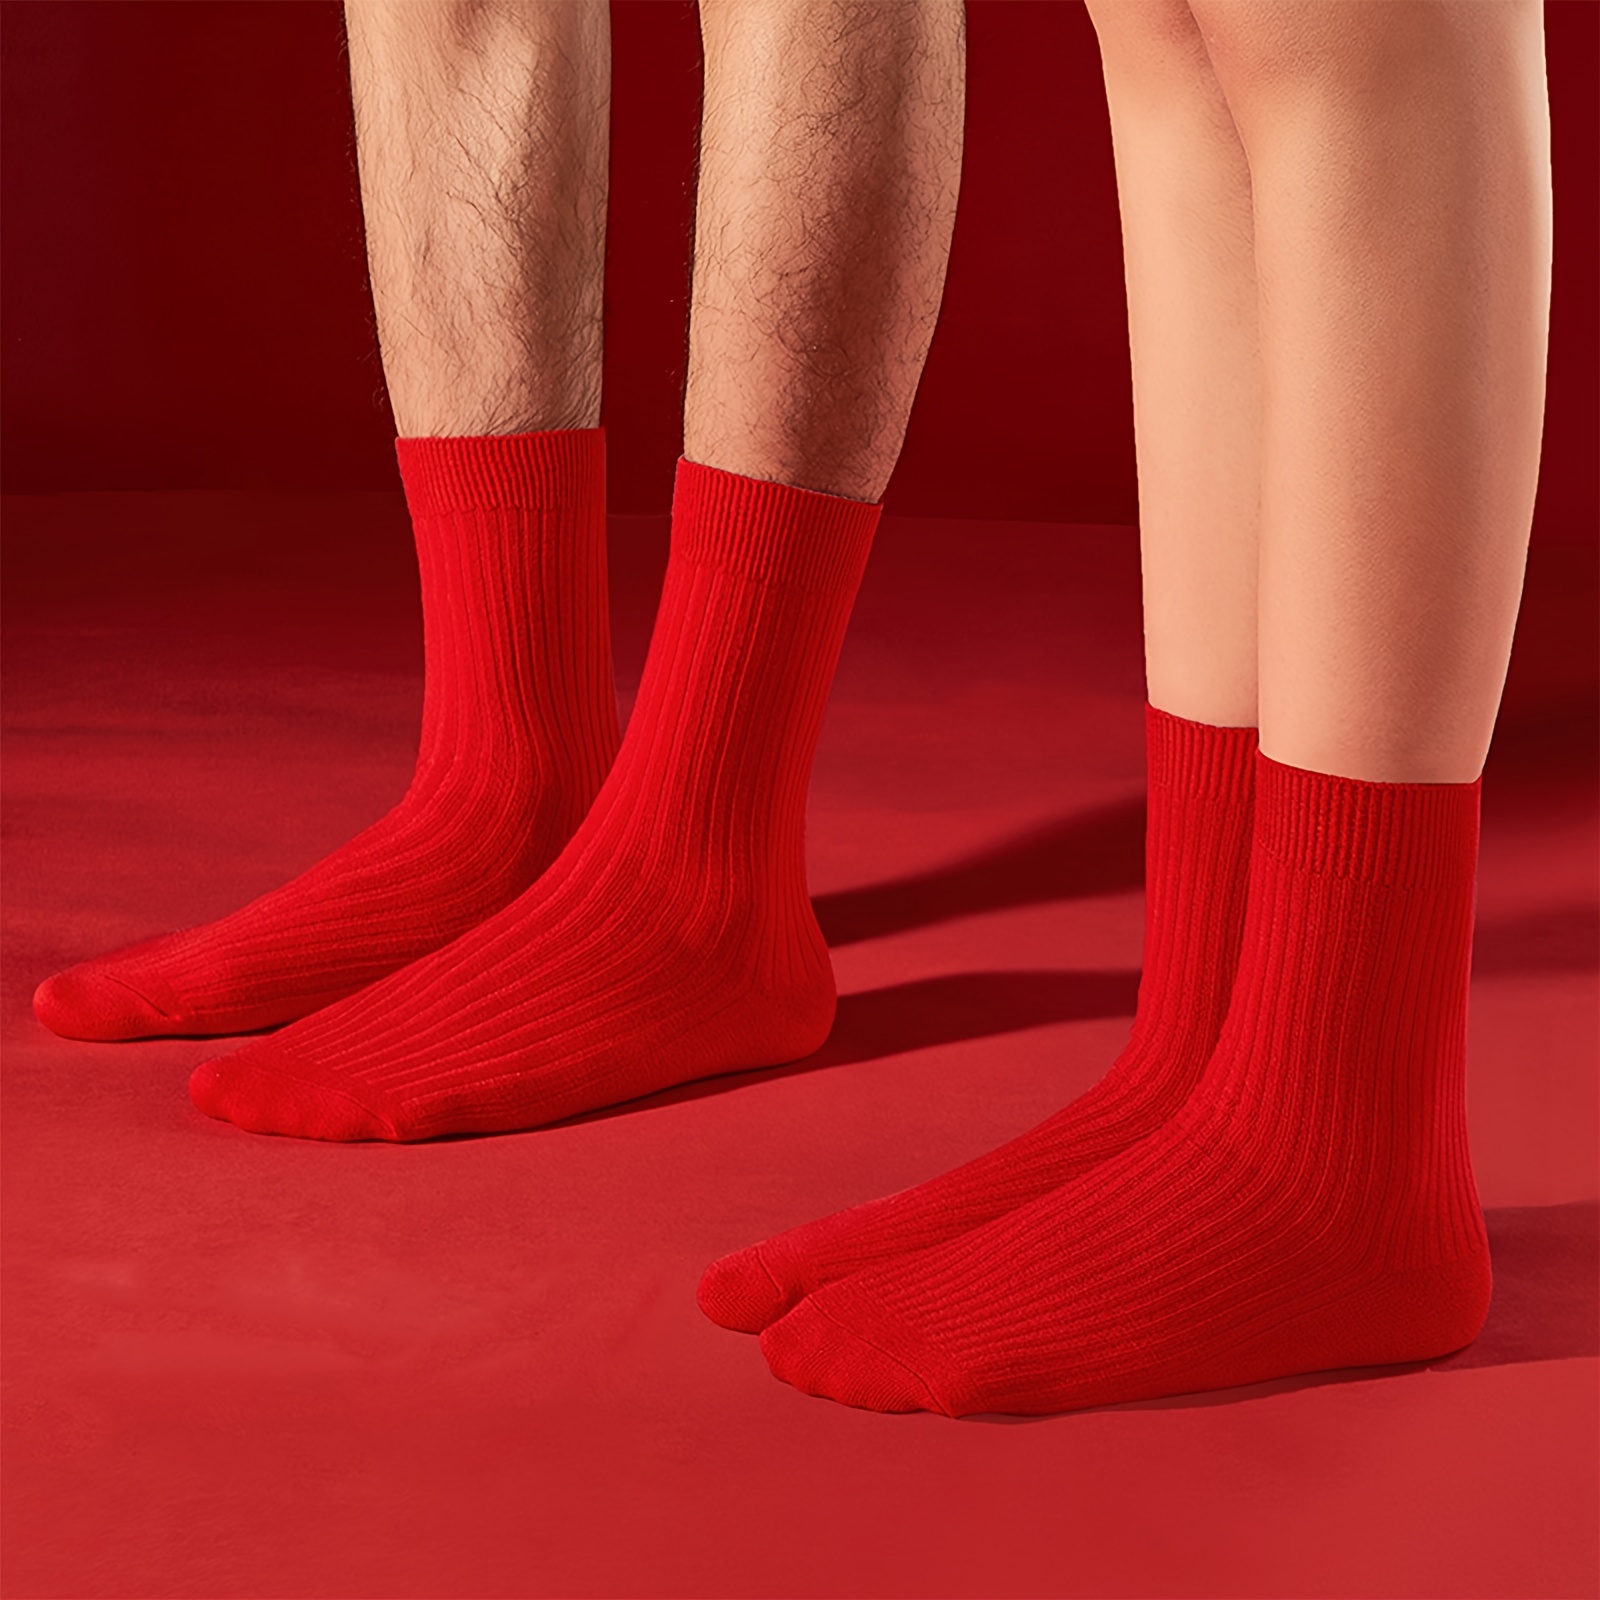 Calcetines de vestir rojos para hombre / Chaussettes Rouge / Calcetines de  vestir de algodón mercerizado -  México